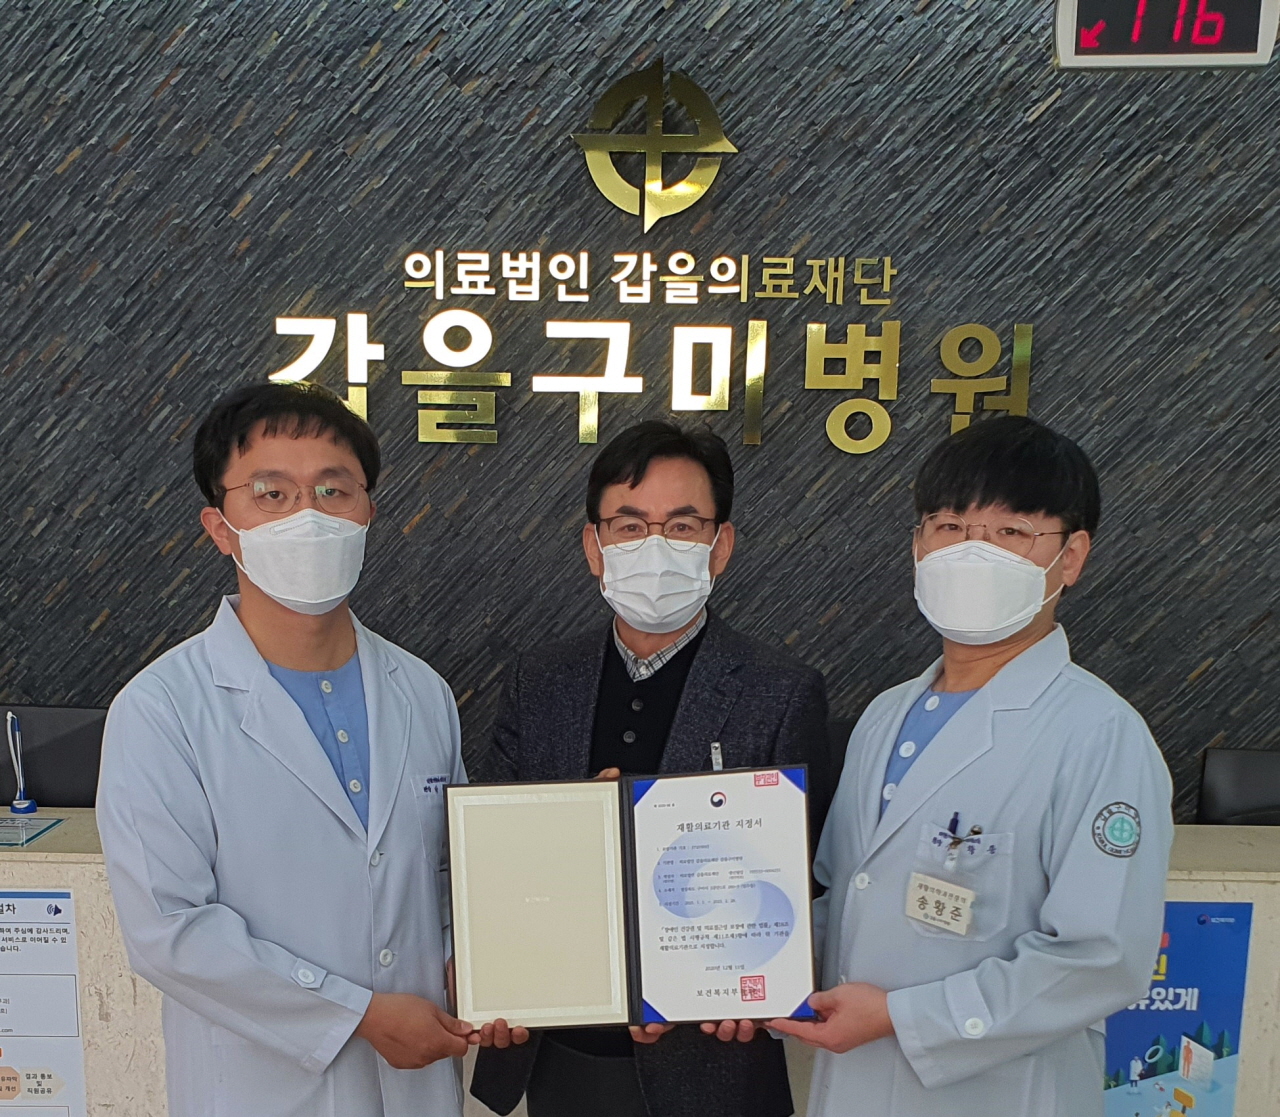 갑을구미병원은 경북 지역 의료기관으로는 처음으로 회복기 재활의료기관으로 지정됐다.사진=갑을구미병원